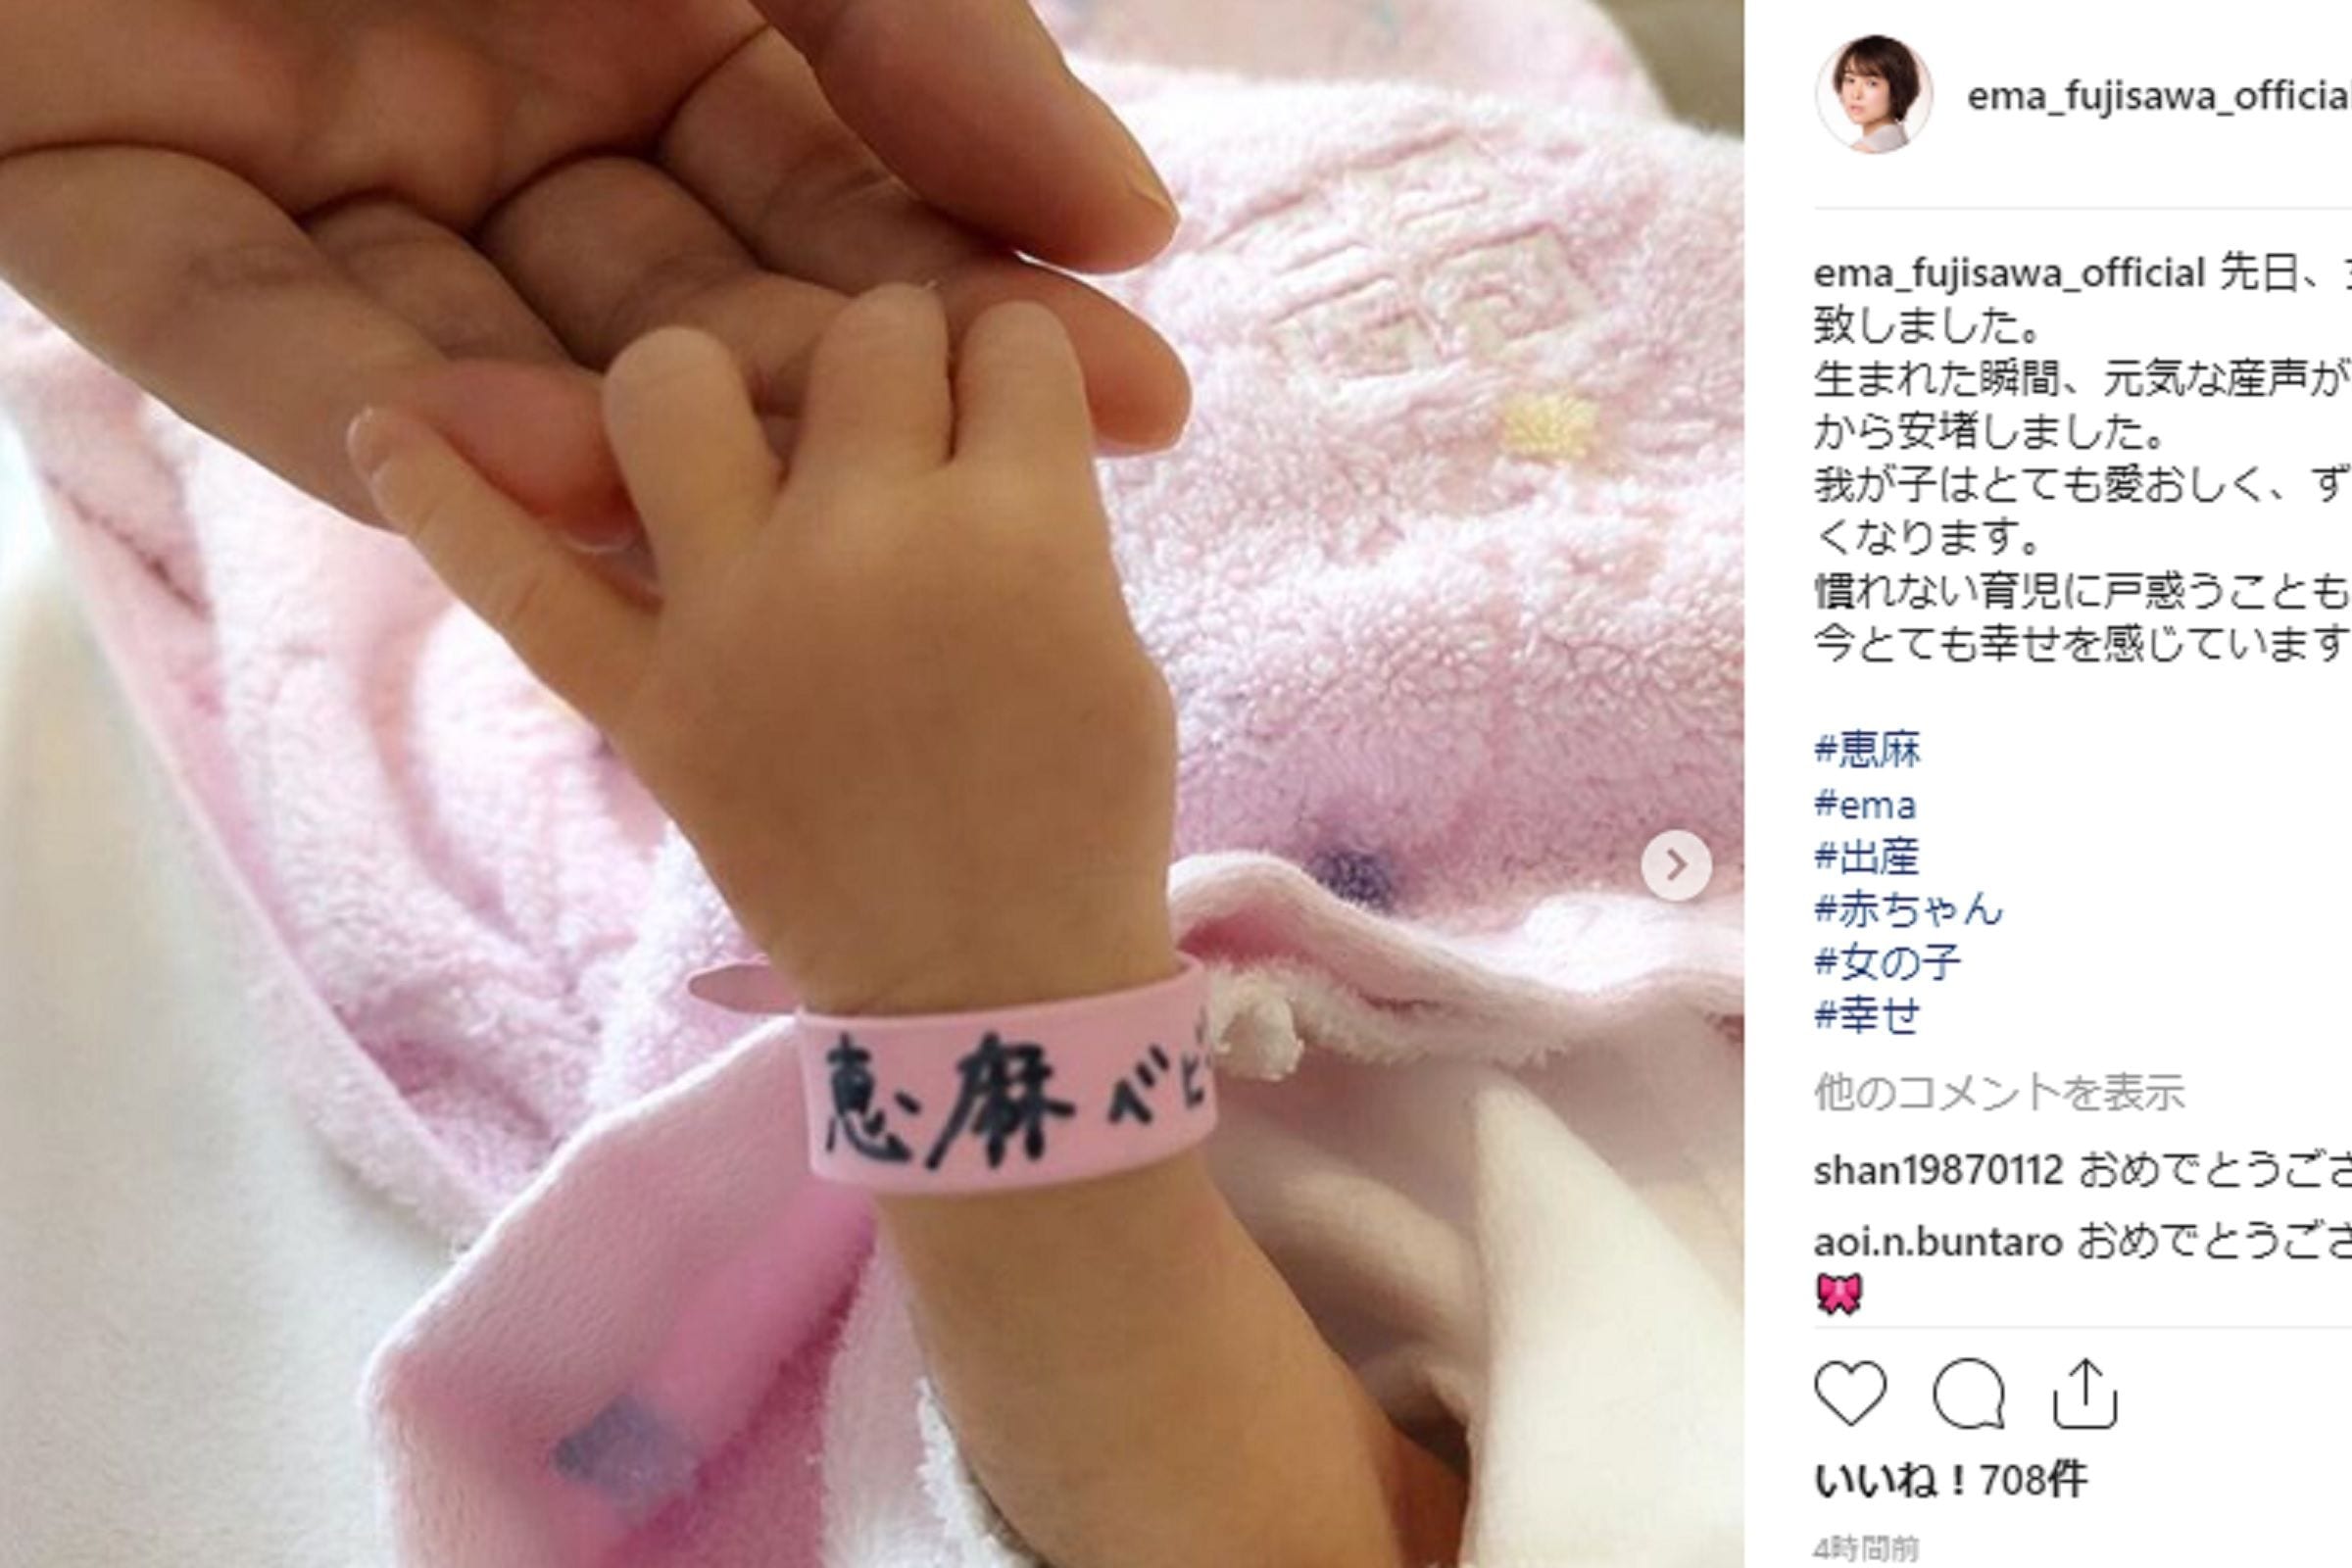 藤澤恵麻が第1子女児出産 公式インスタグラムで 幸せを感じています と報告 ニュースサイトしらべぇ